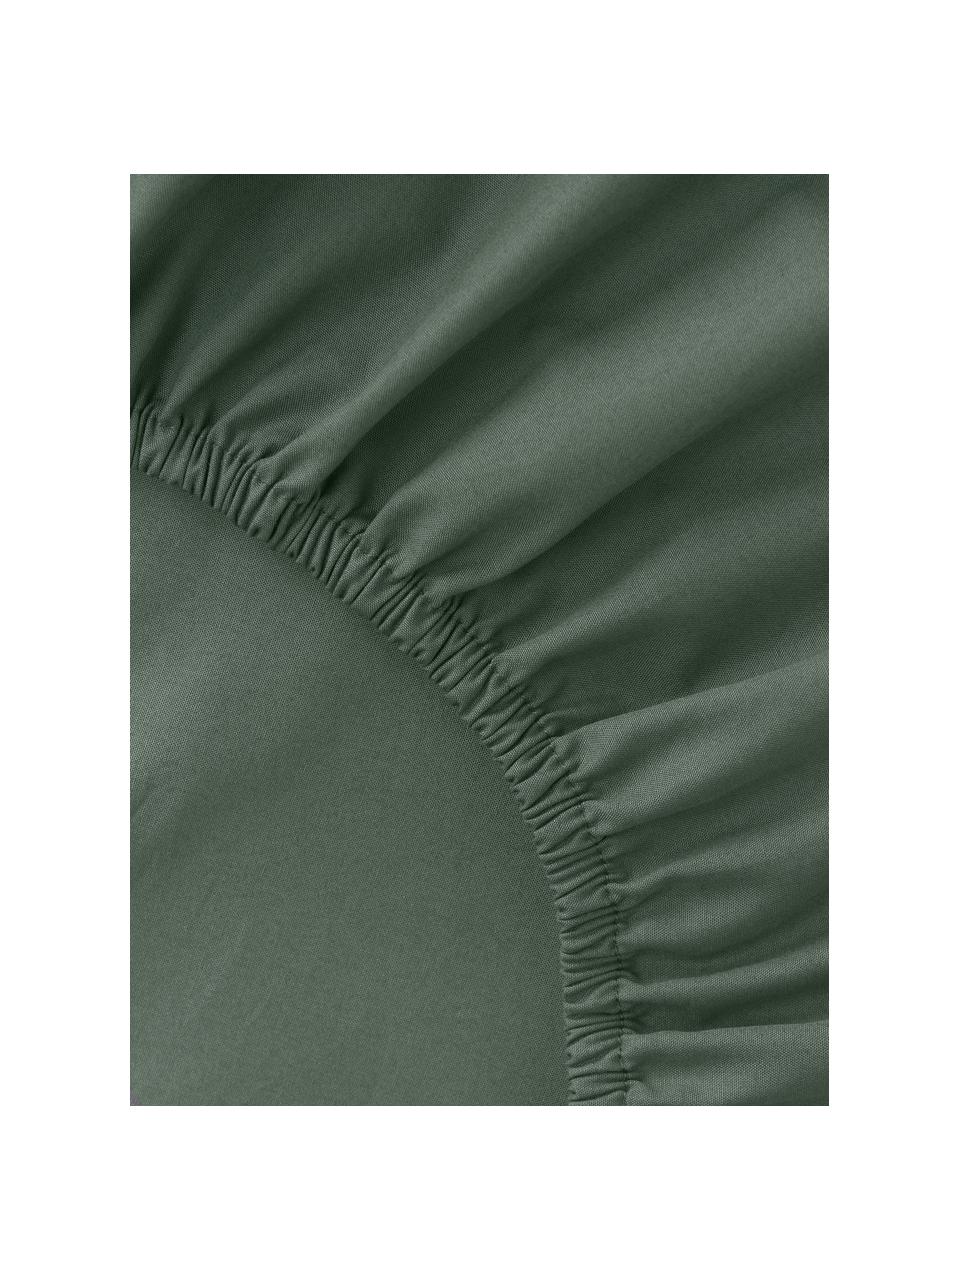 Sábana bajera sobrecolchón de percal Elsie, Verde oscuro, Cama 135/140 cm (140 x 200 x 15 cm)